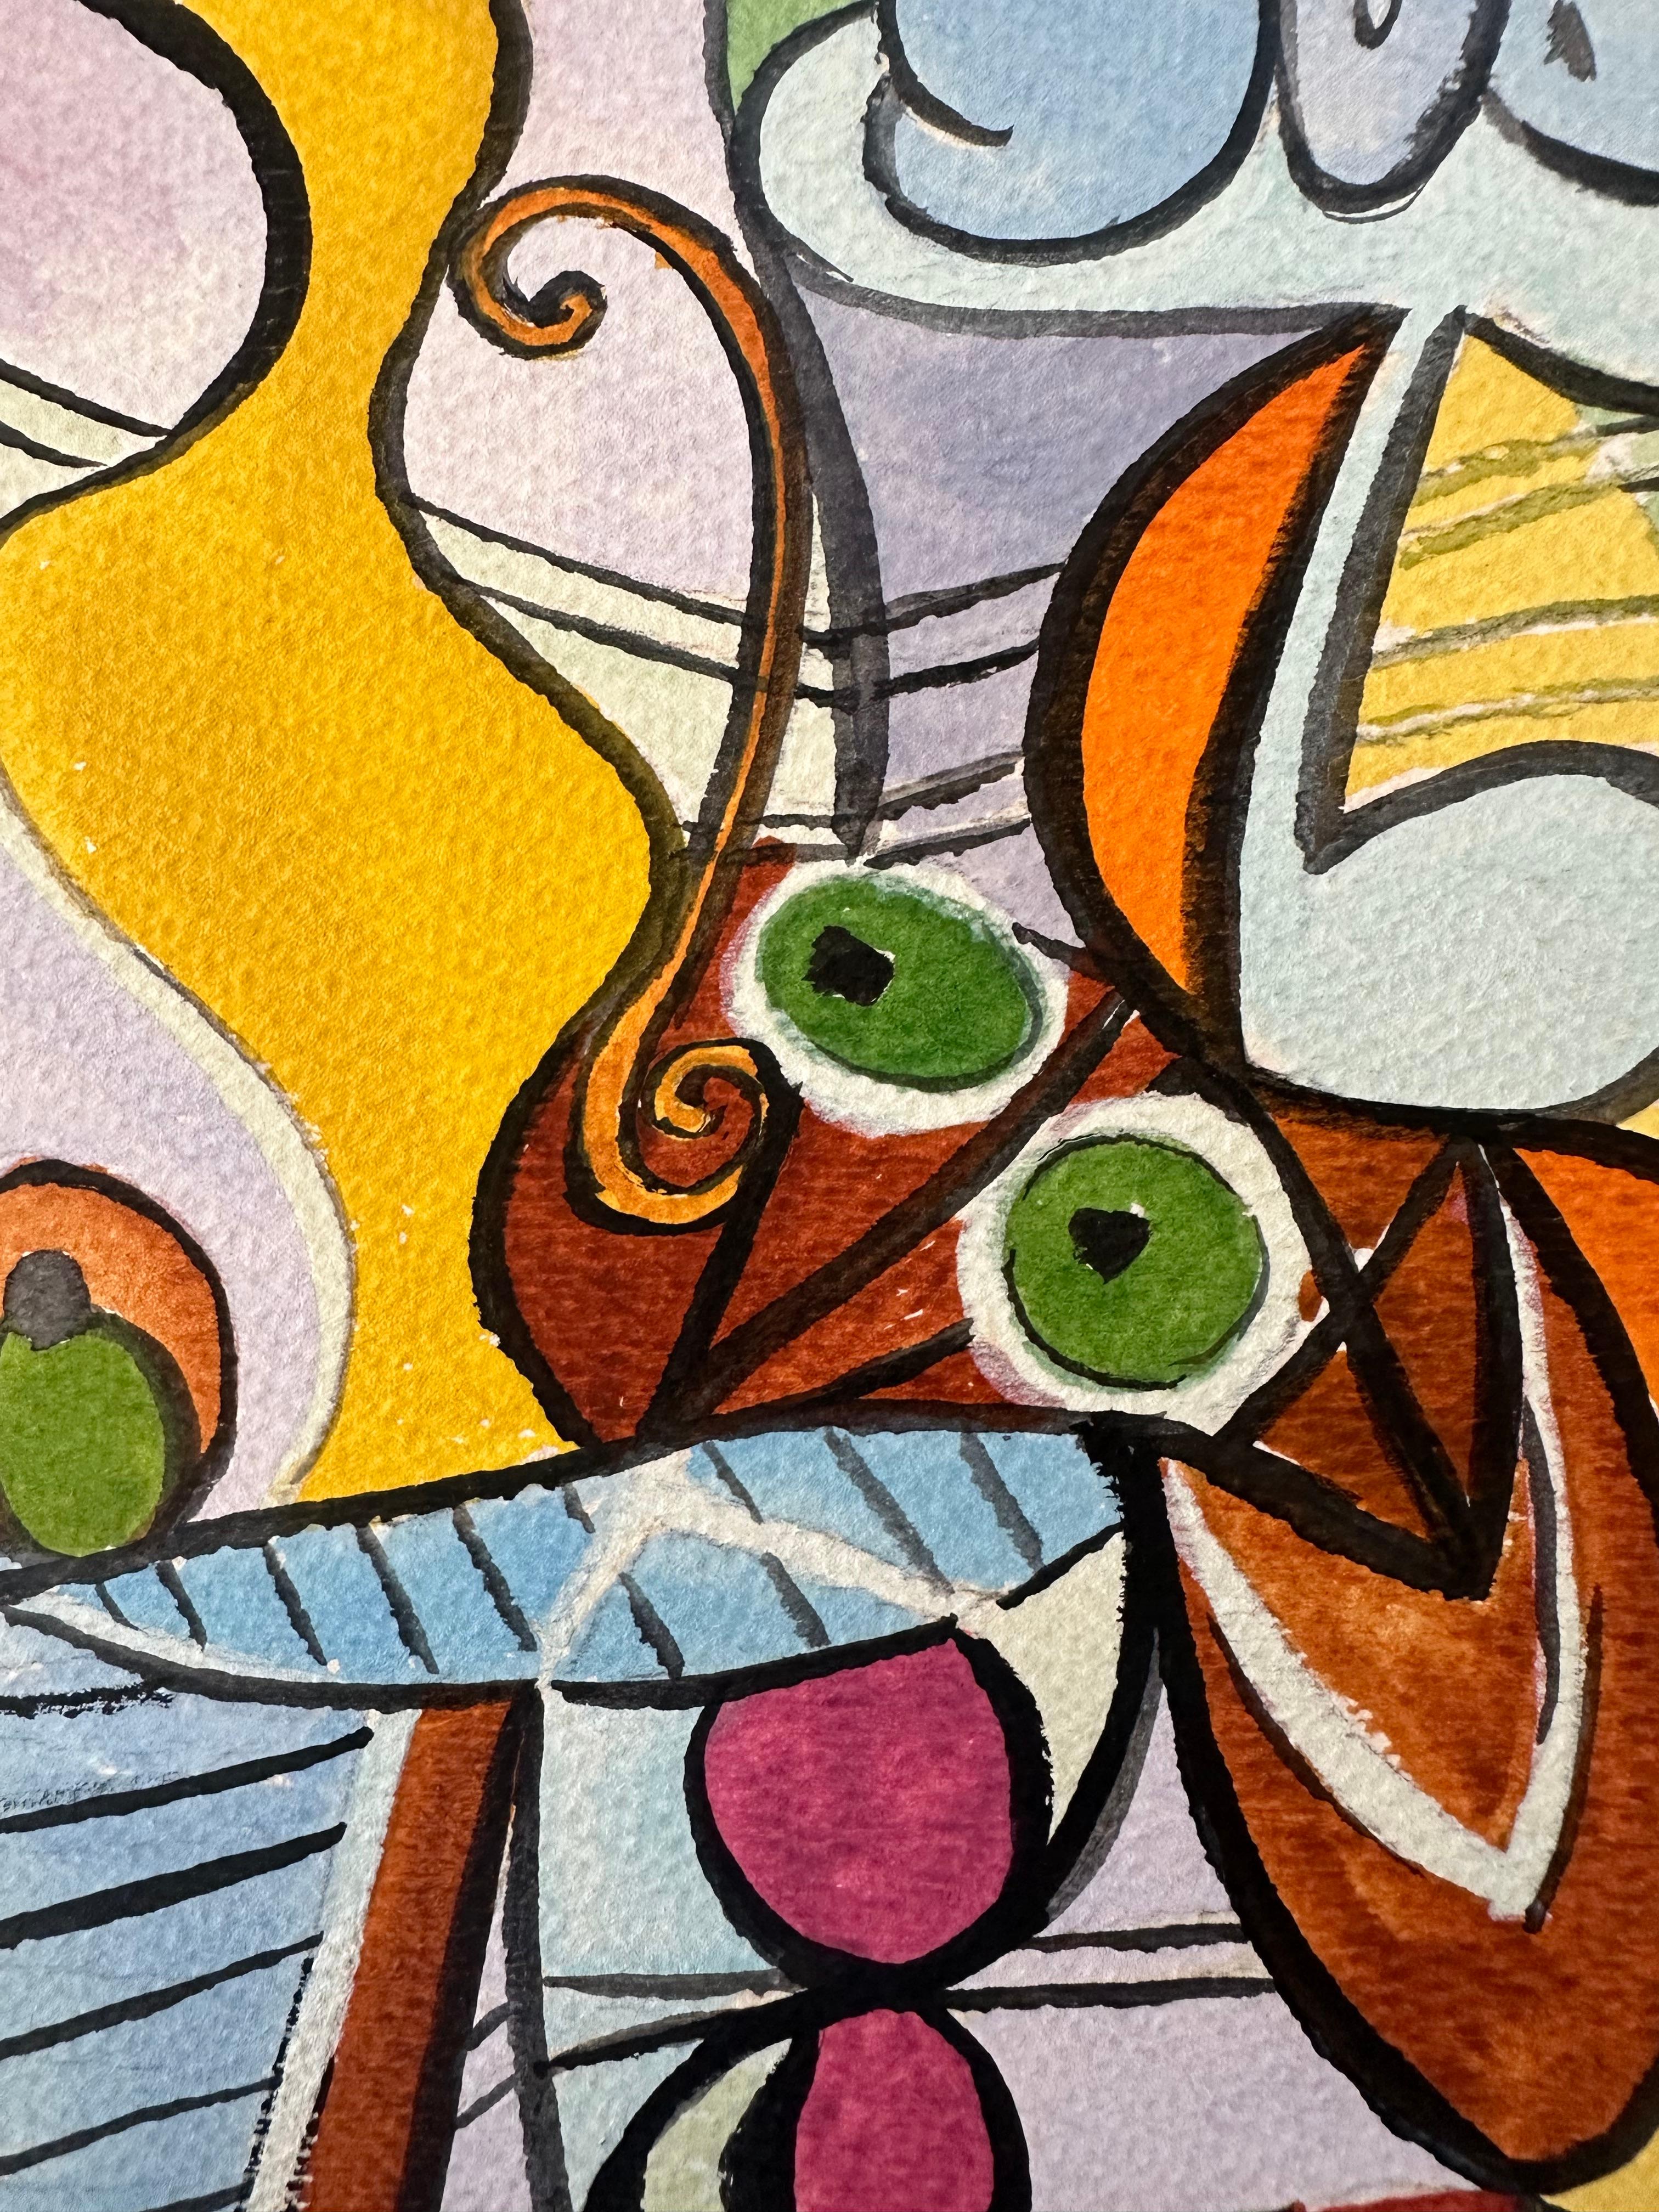 Kubistisches Stilleben – Painting von (after) Pablo Picasso